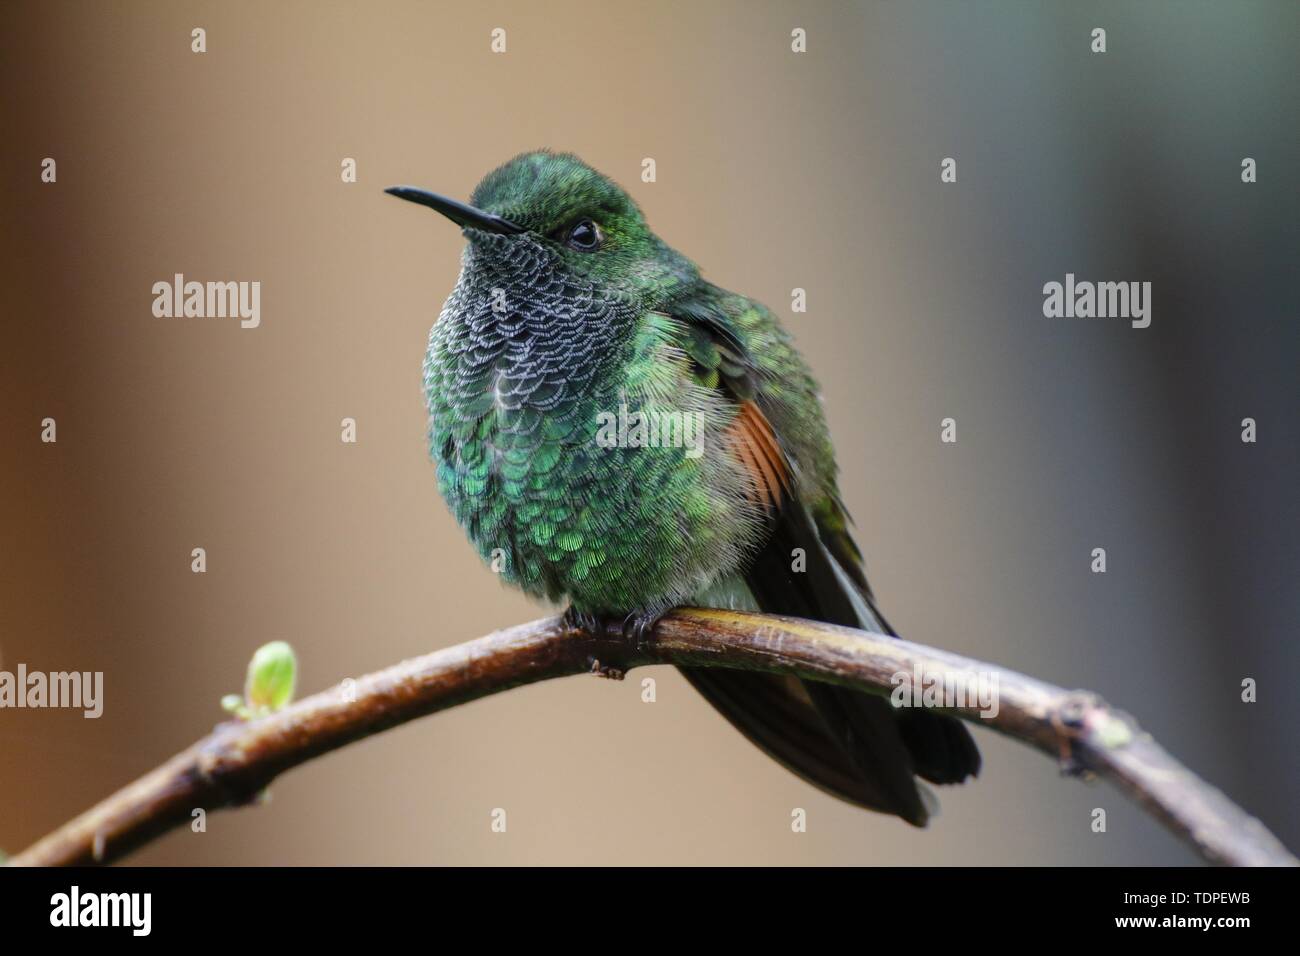 Male Stripe-tailed hummingbird  Eupherusa eximia Stock Photo